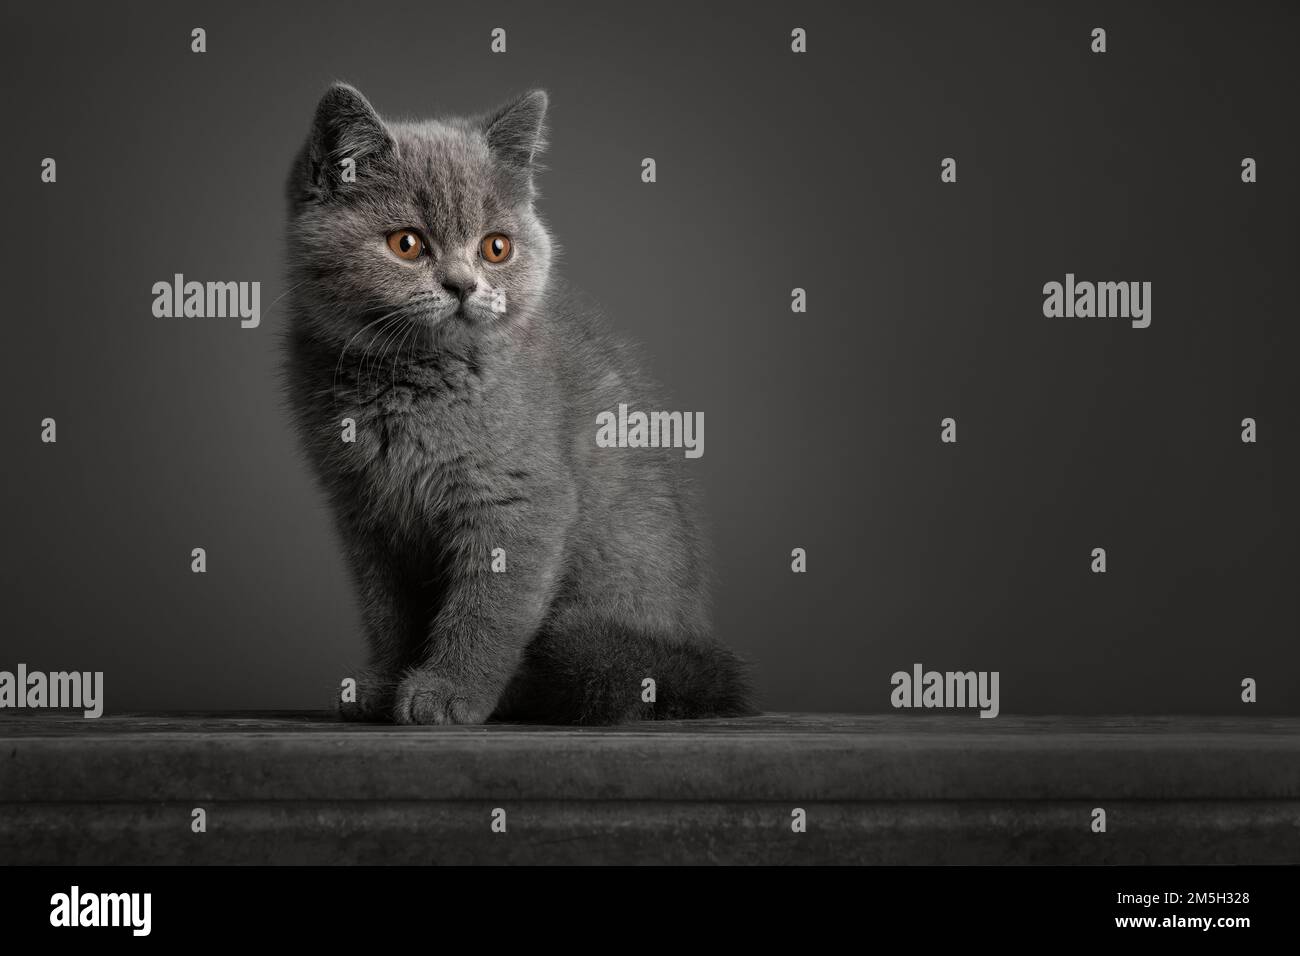 Ggray gatito británico de pelo corto con ojos dorados mirando hacia otro lado en un fondo gris en una imagen de arte fino Foto de stock